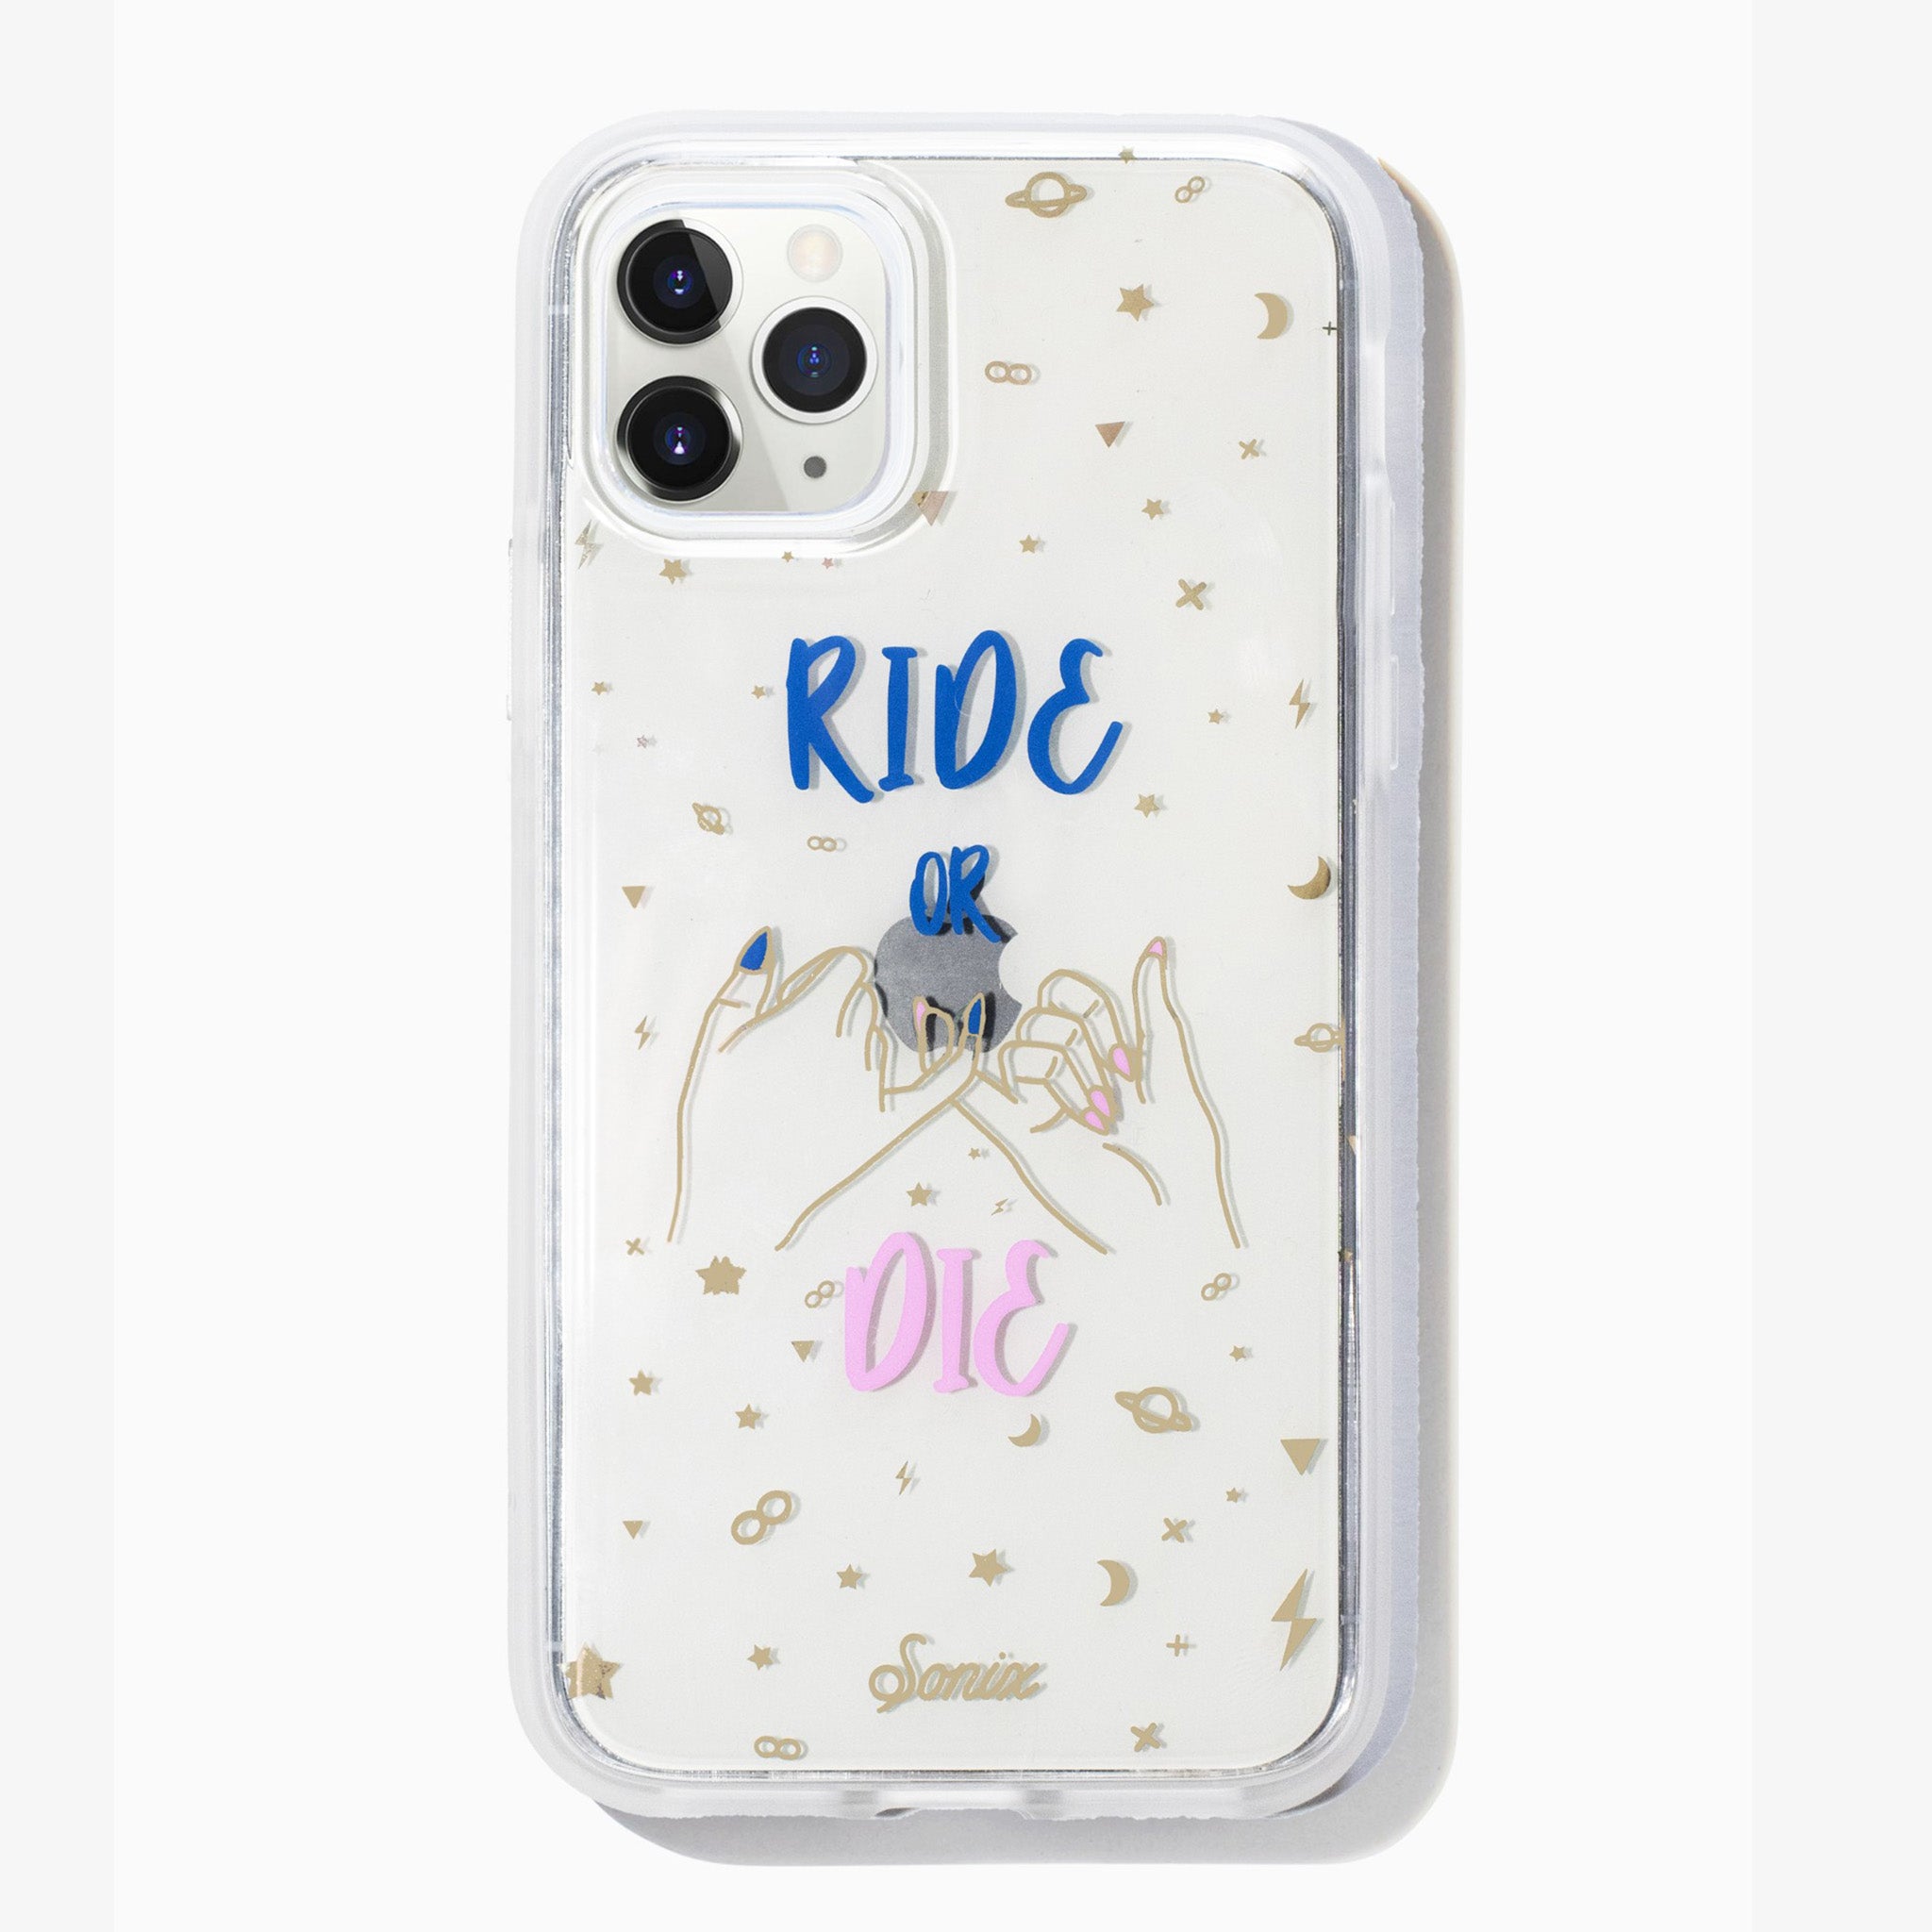 Ride or Die iPhone Case